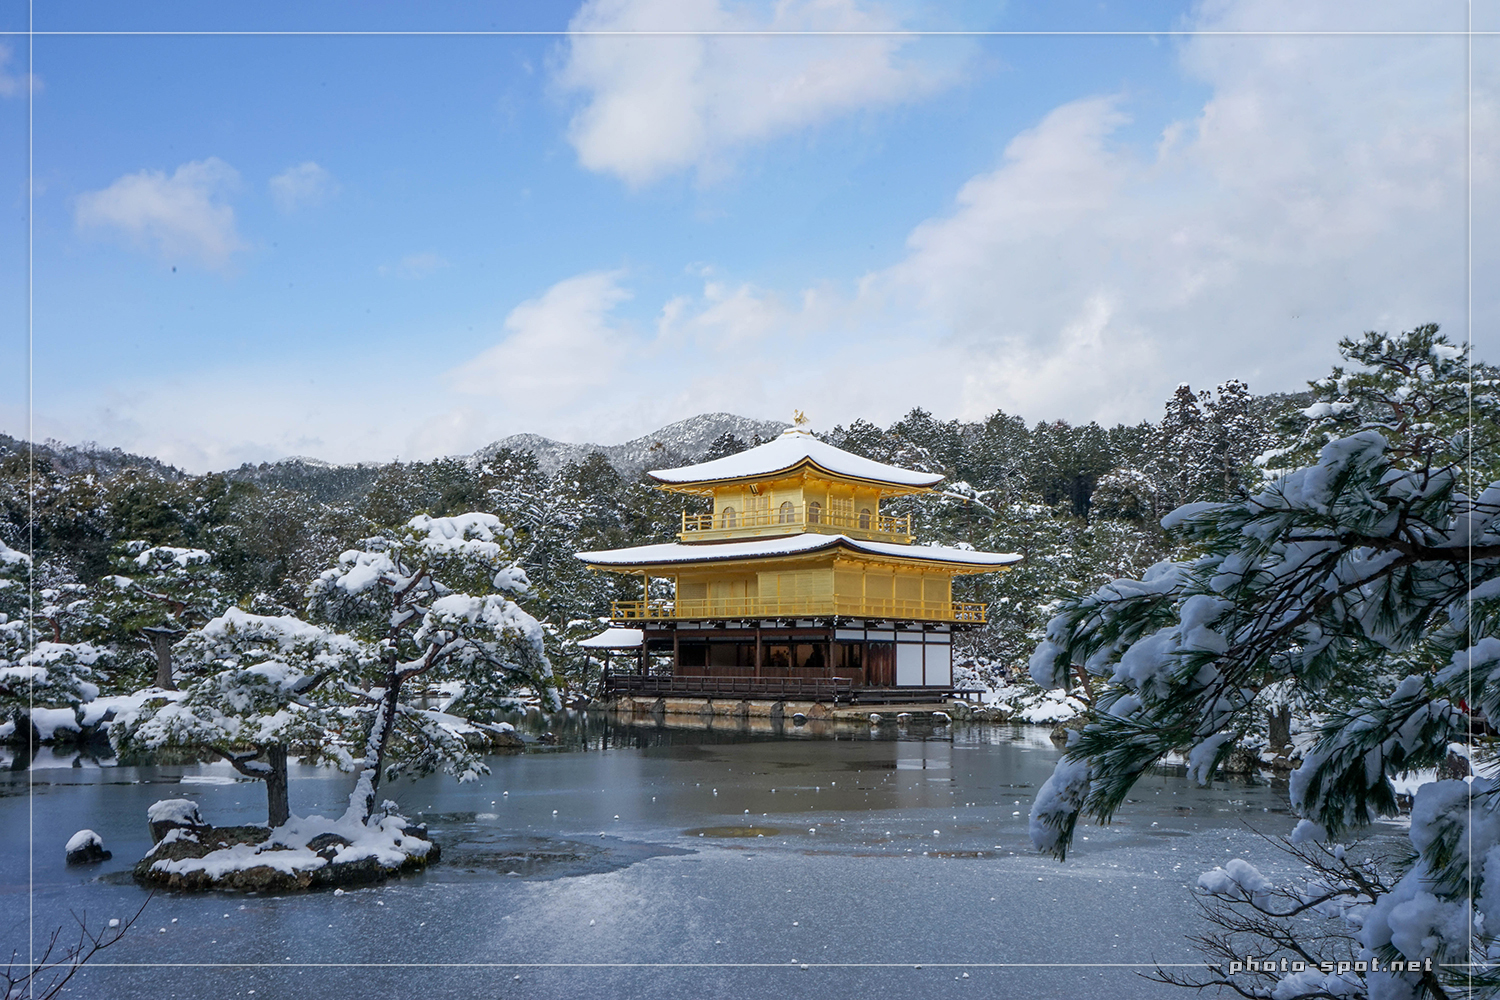 青空に映える金閣寺の雪化粧(35mm撮影)